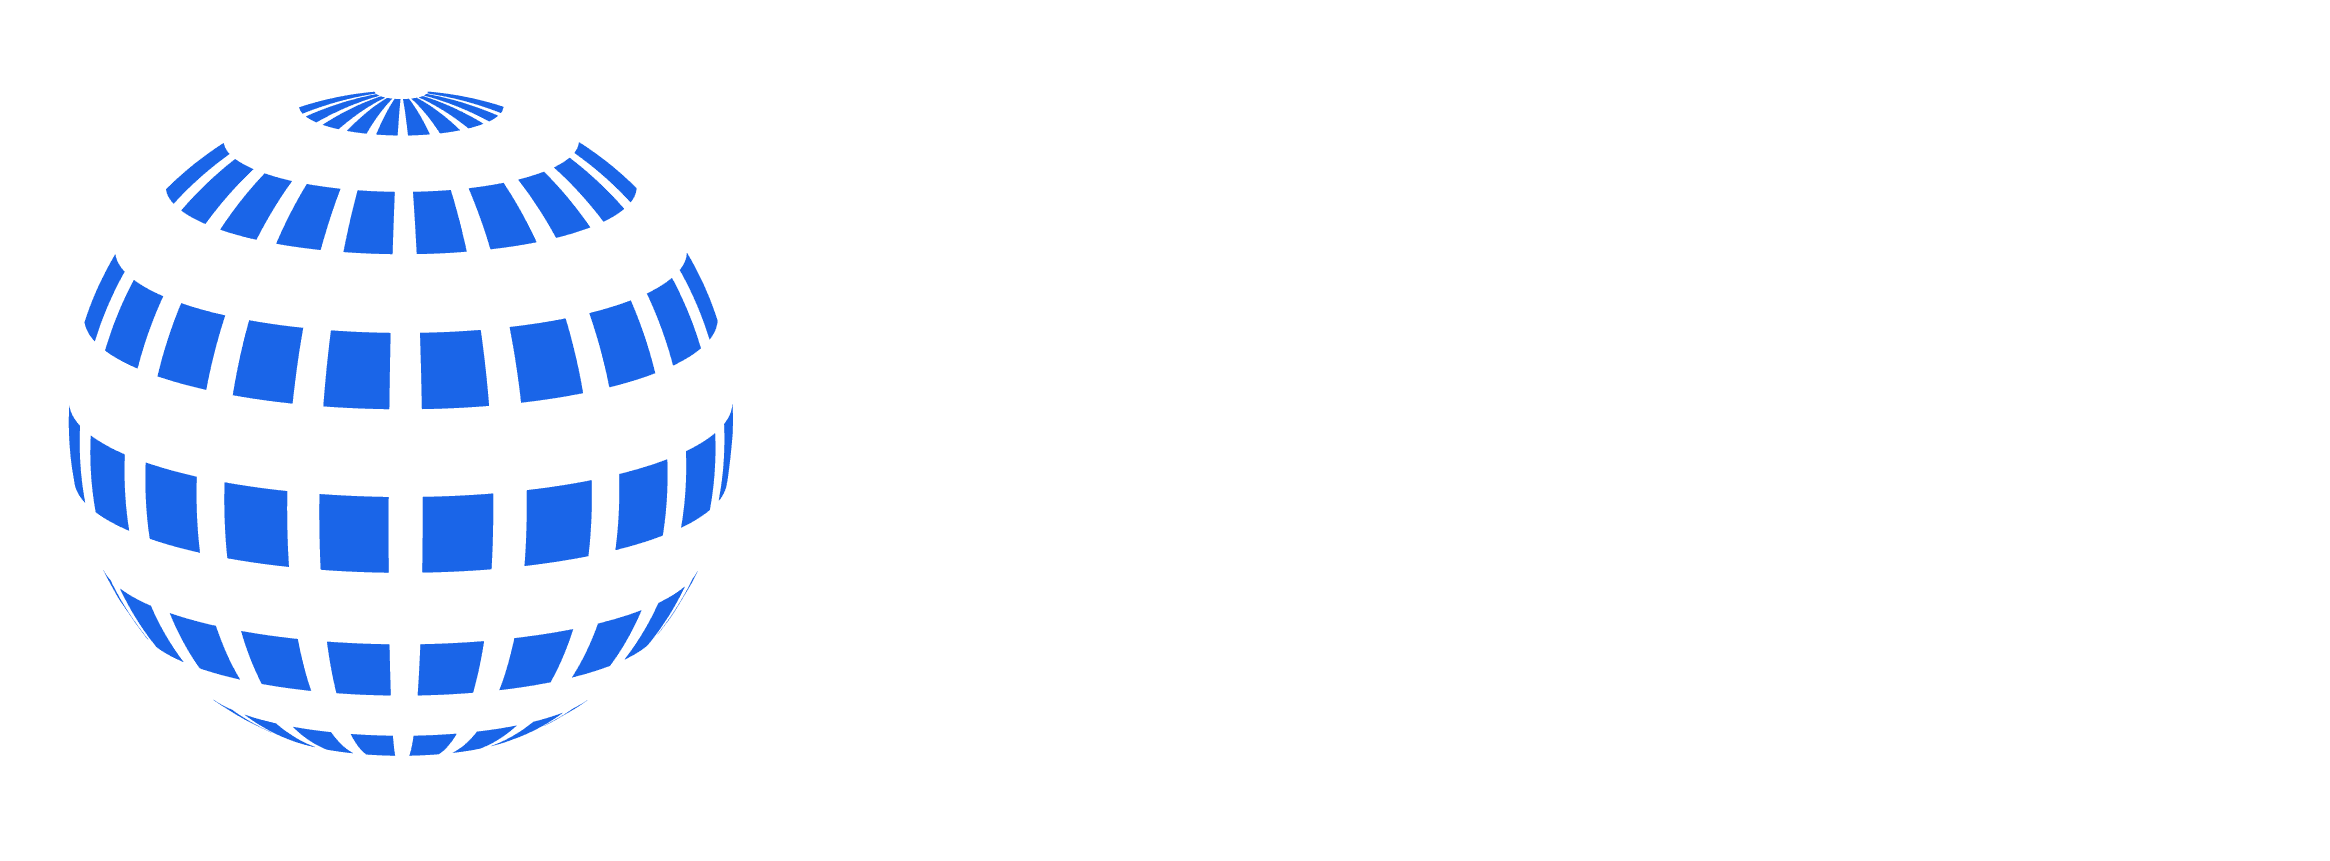 Atlas Group Metal